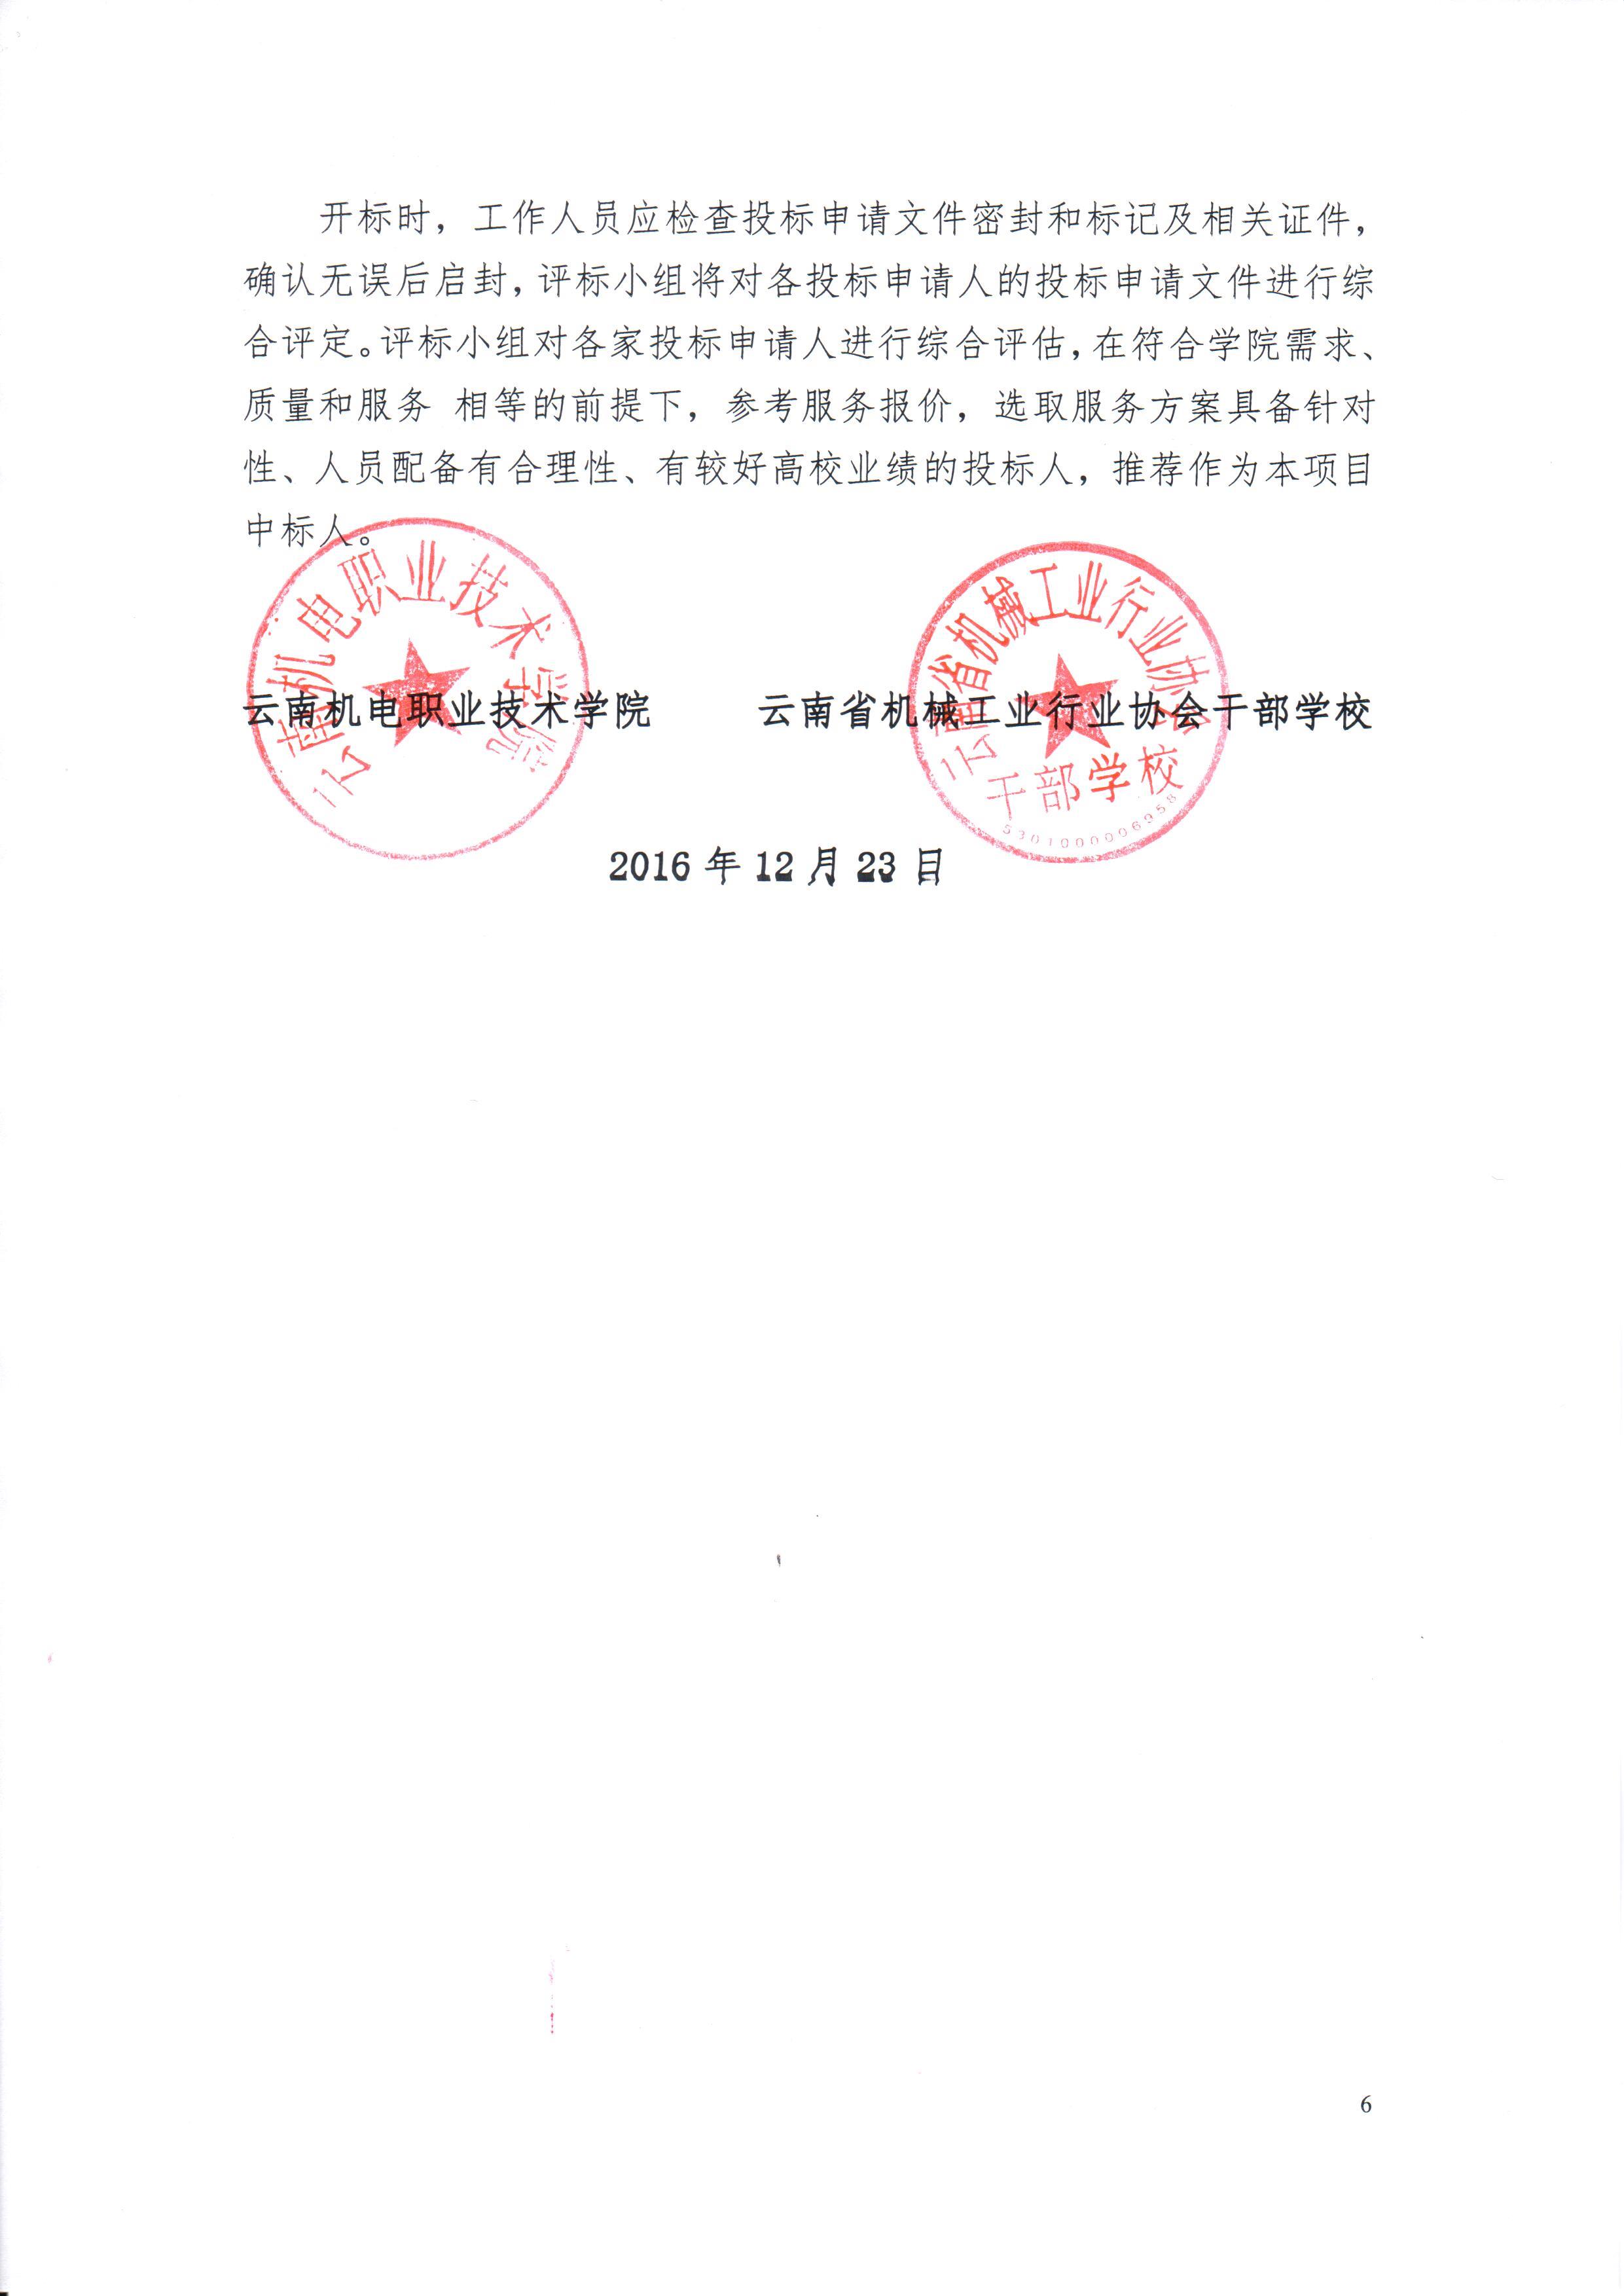 云南机电职业技术学院云南省机械工业行业协会